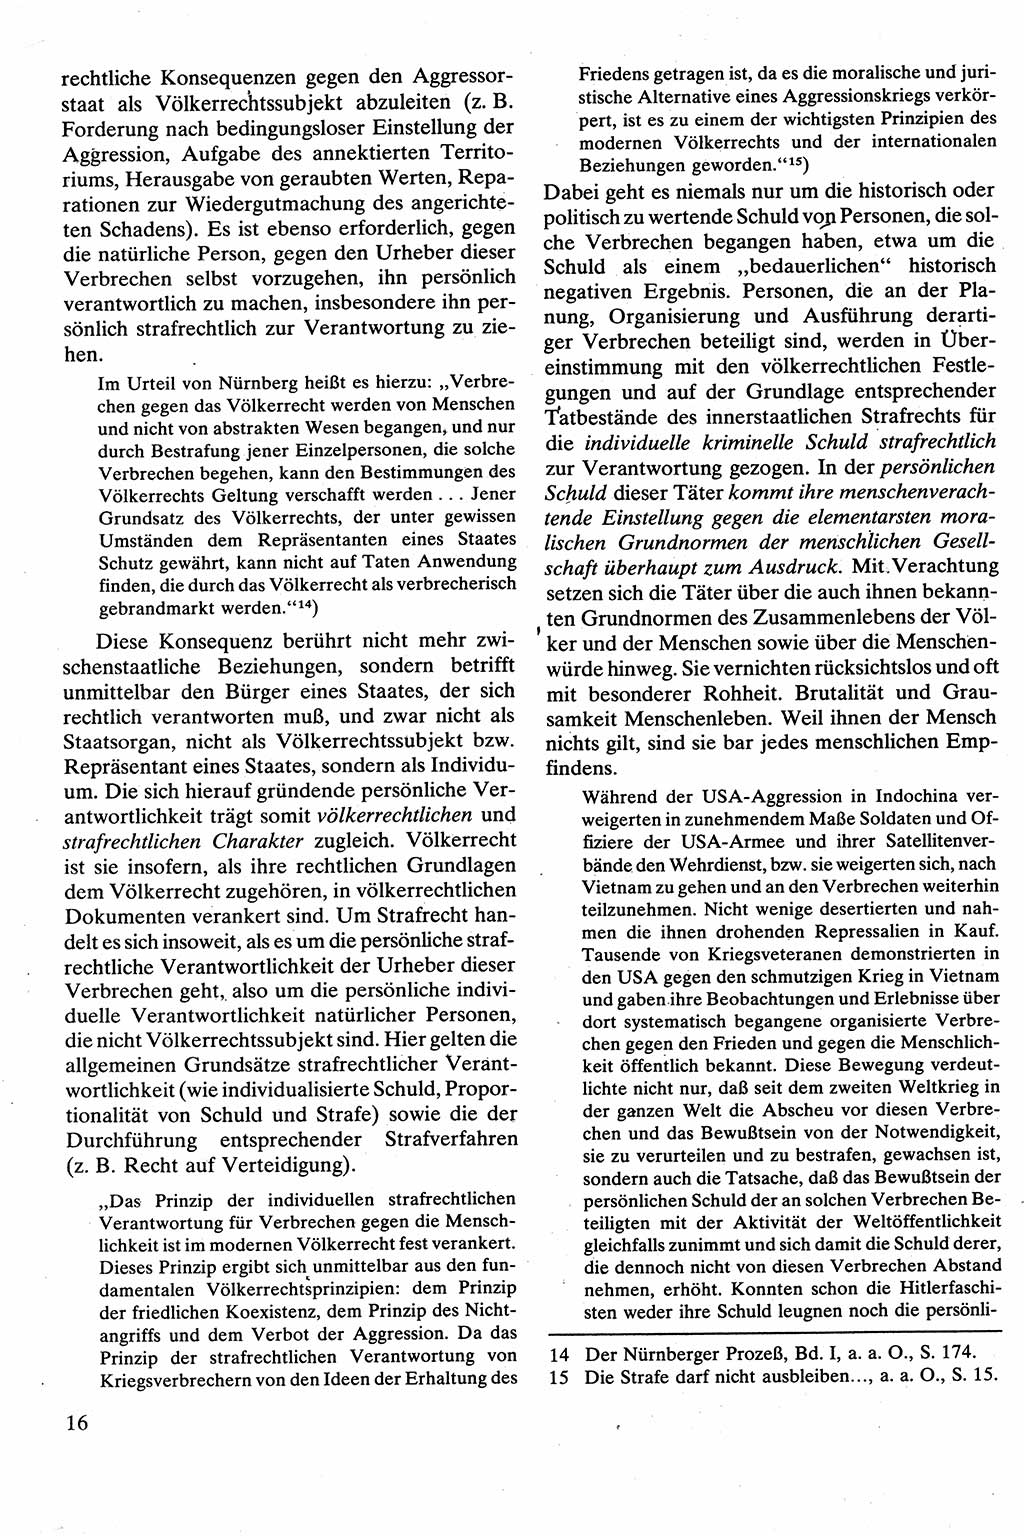 Strafrecht [Deutsche Demokratische Republik (DDR)], Besonderer Teil, Lehrbuch 1981, Seite 16 (Strafr. DDR BT Lb. 1981, S. 16)